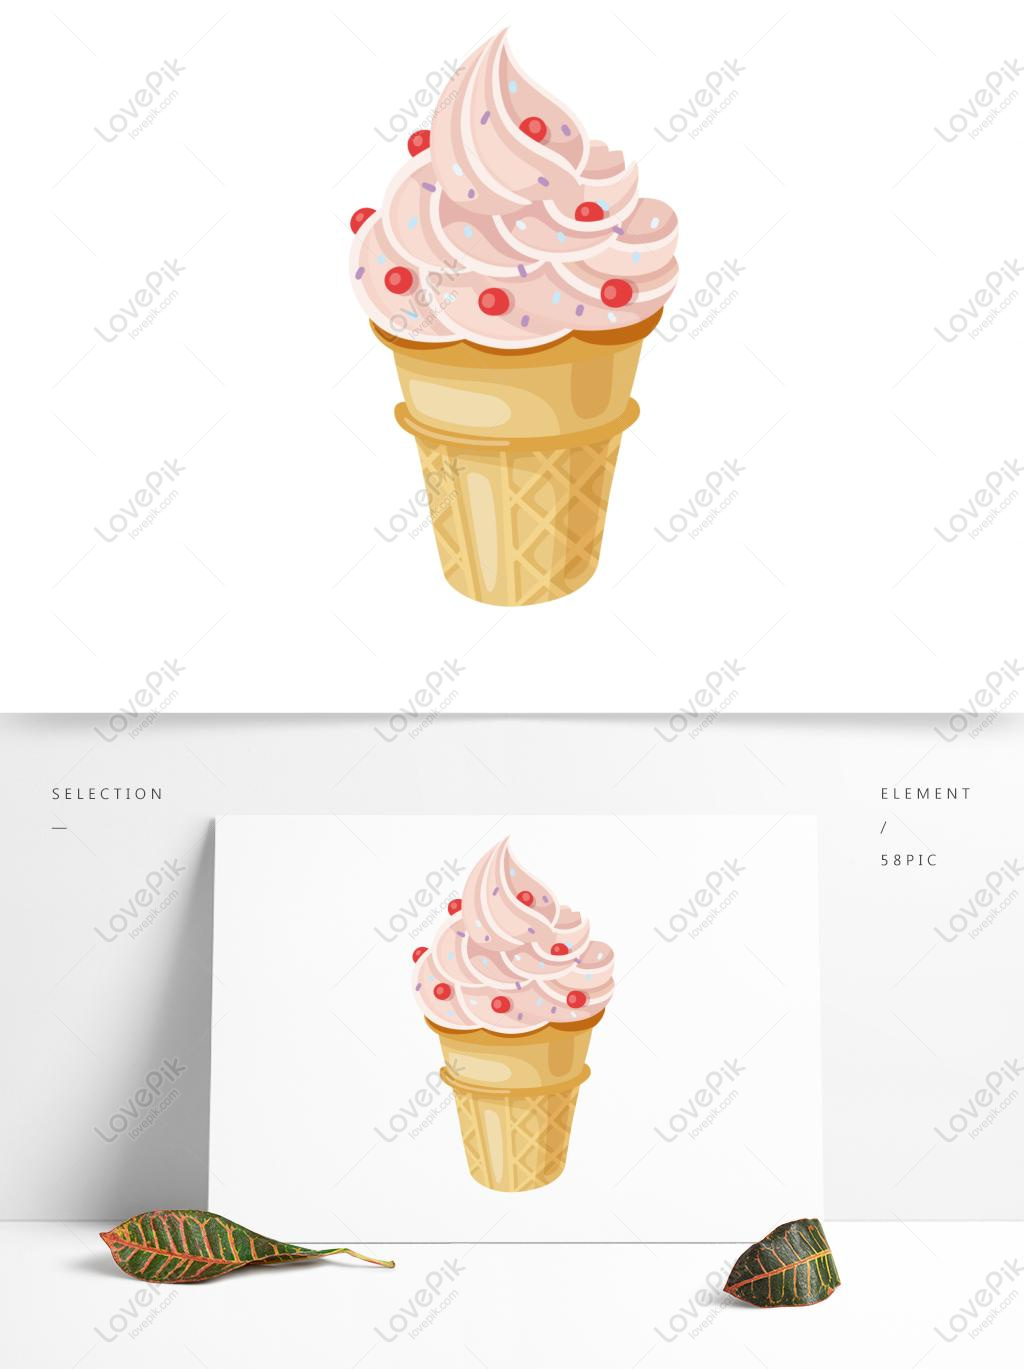 Ice Cream Cone: Vị ngọt lịm của kem và hình dáng thú vị của chiếc hình que kem sẽ khiến bạn muốn thưởng thức ngay lập tức. Không chỉ thế, hãy cùng cảm nhận vẻ đẹp của các chiếc que kem được sáng tạo tinh tế và độc đáo. Xem ảnh để thõa mãn cơn khát ngay hôm nay!